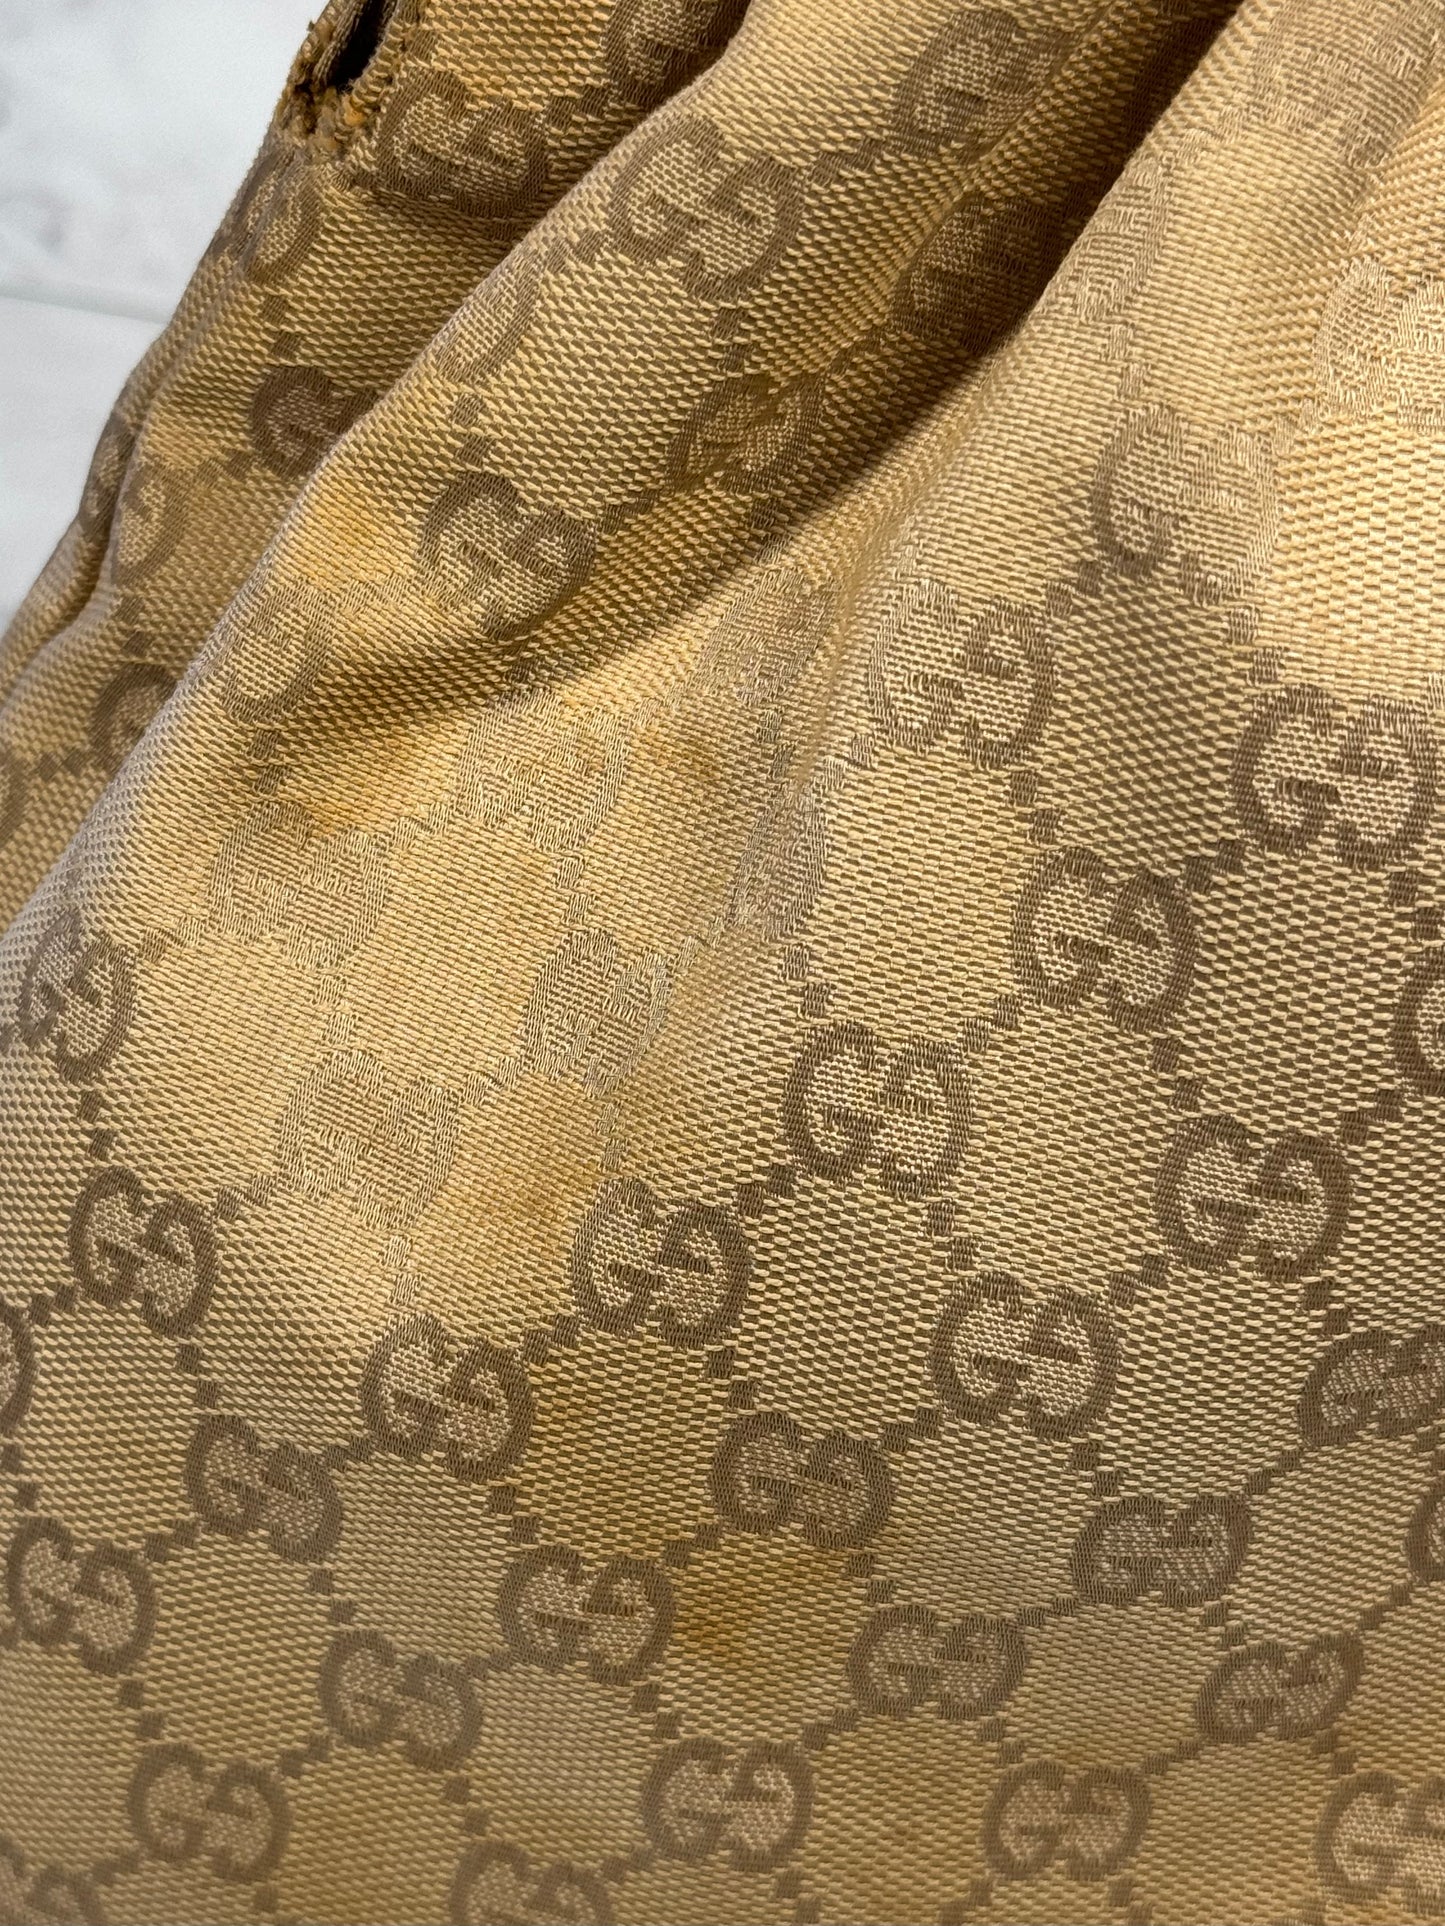 Gucci Vintage Beige GG Monogram Canvas Bamboo Top Handle Shoulder Satchel Bag